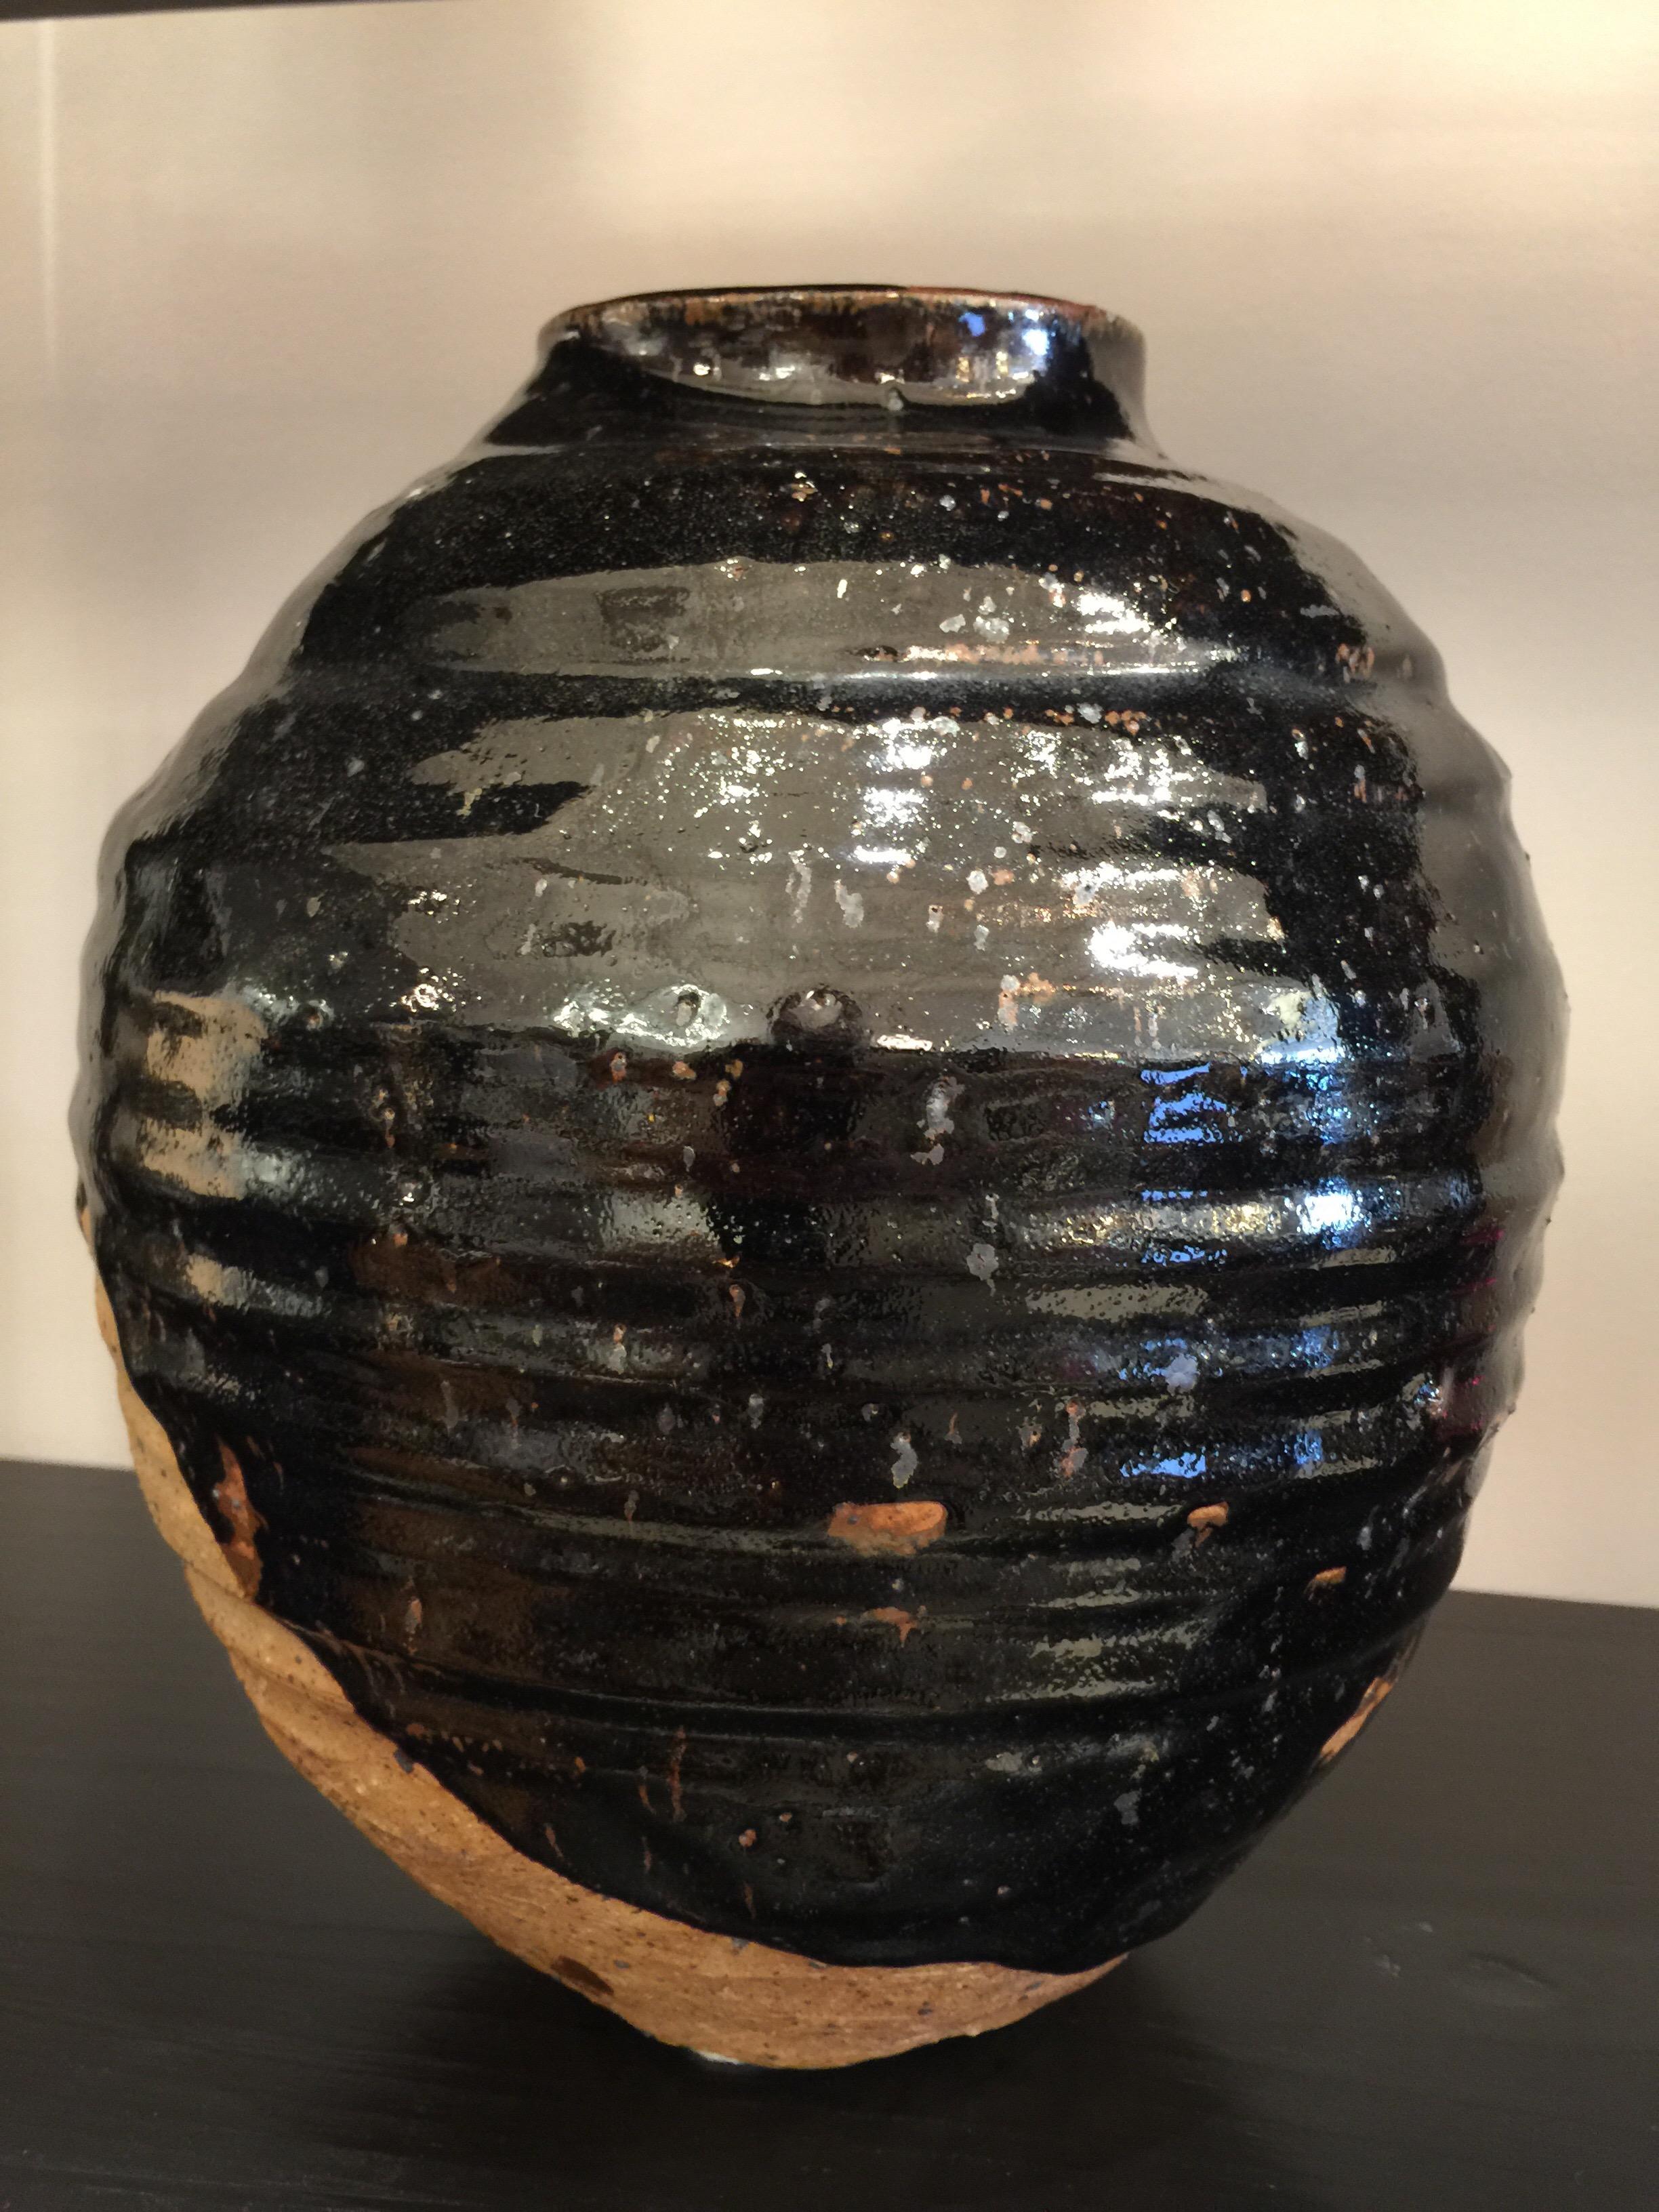 Il s'agit d'un vase en faïence naturelle émaillée noire extrêmement bien fait et élégant.